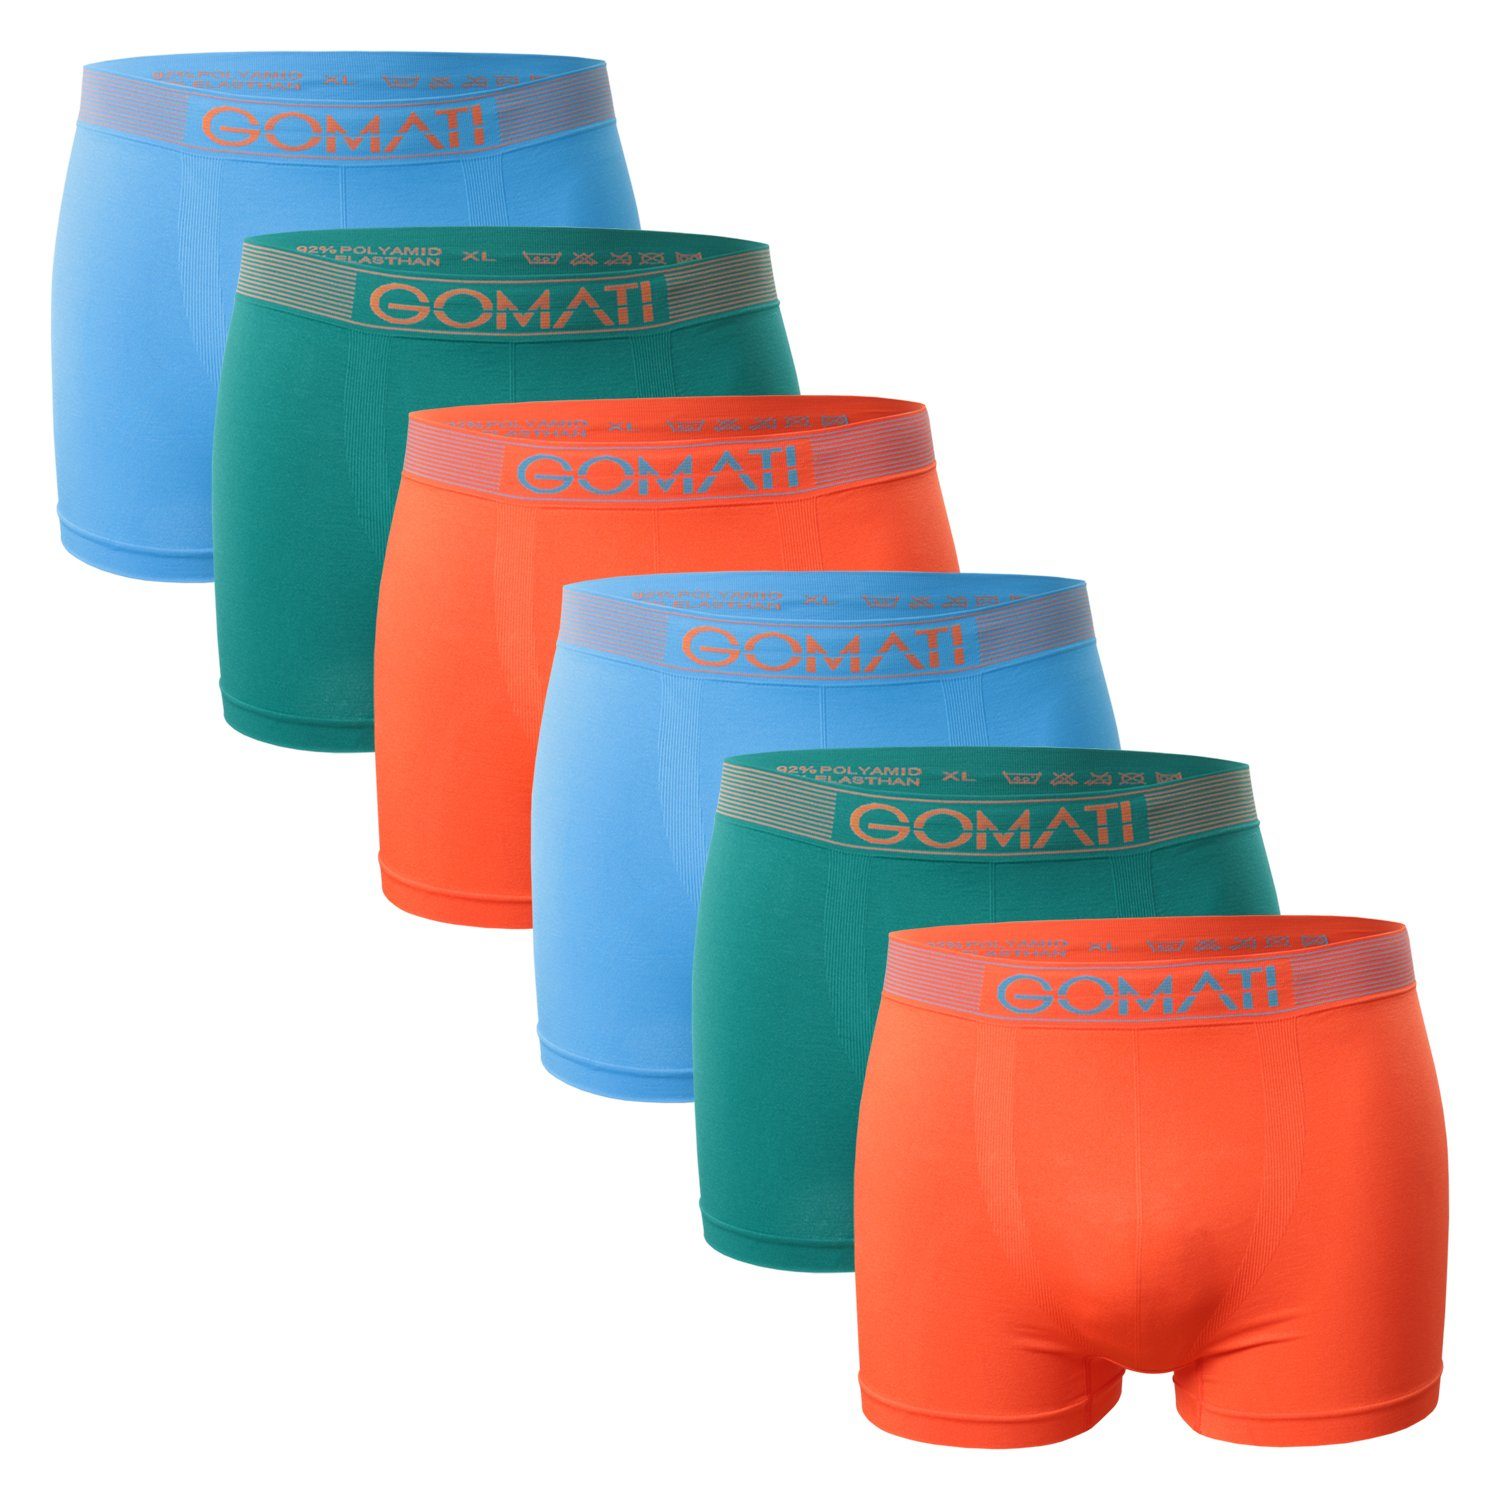 Gomati Boxershorts Herren Seamless / / Petrol (6er Azure Microfaser-Elasthan Pack) Pants Orange Boxershorts